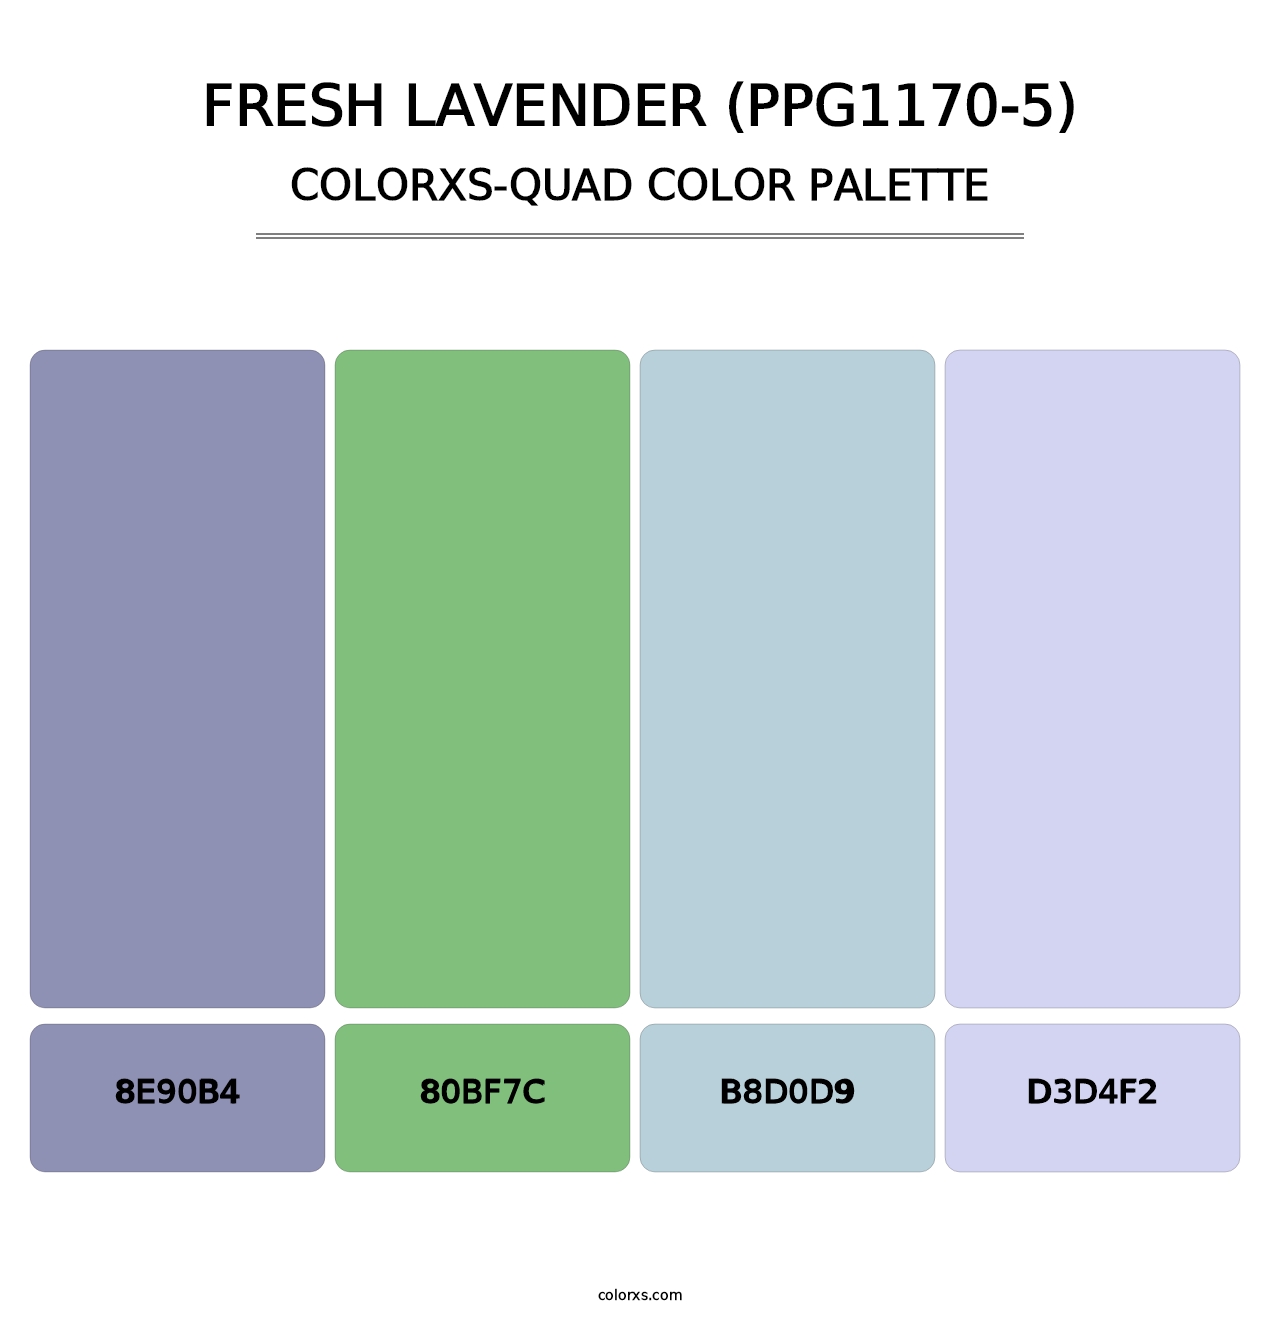 Fresh Lavender (PPG1170-5) - Colorxs Quad Palette